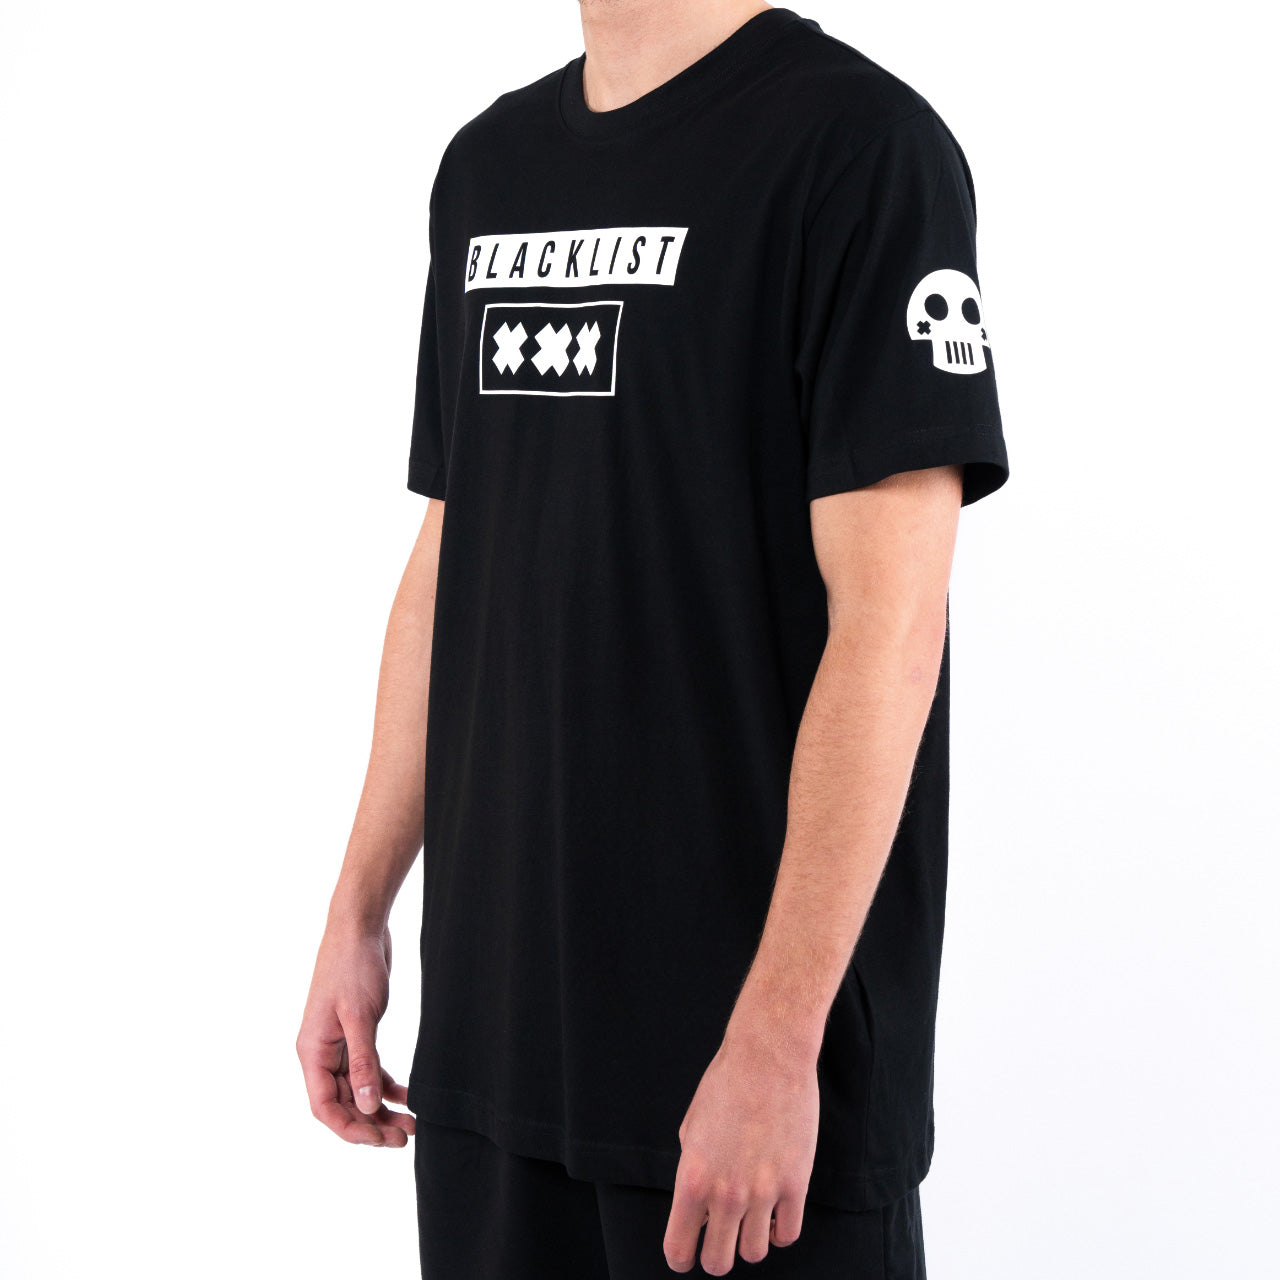 Blacklist - Advanced Collection 1 T-Shirt und Shorts Bundle